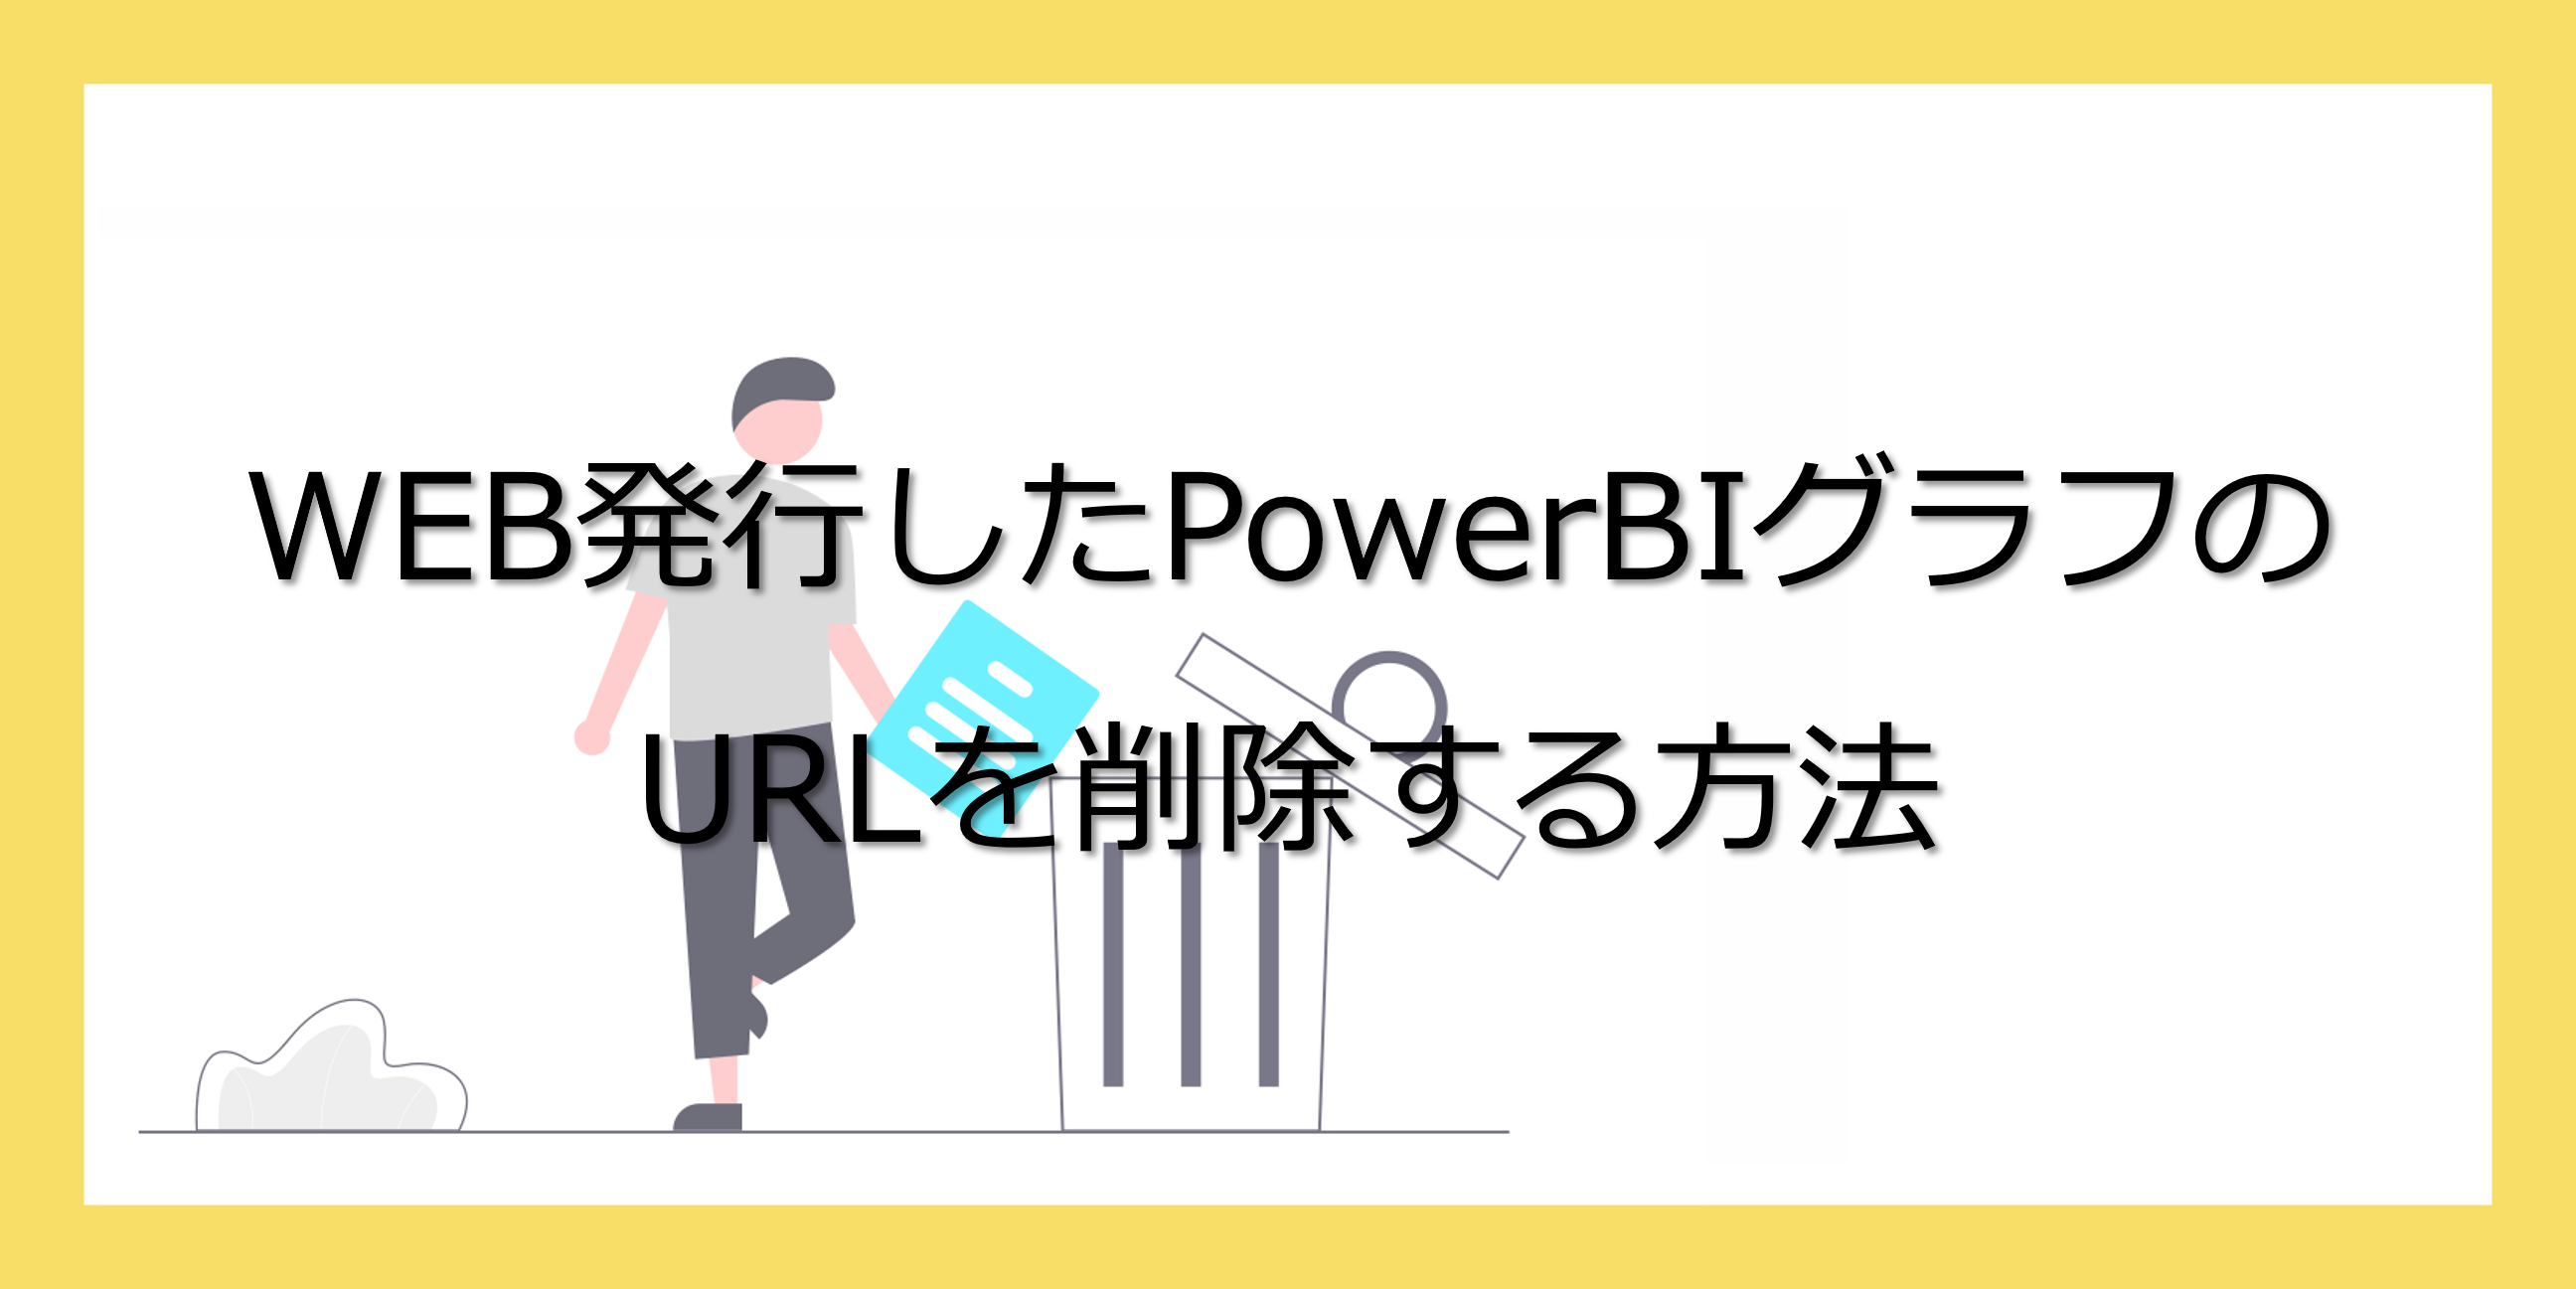 サムネ_PowerBI